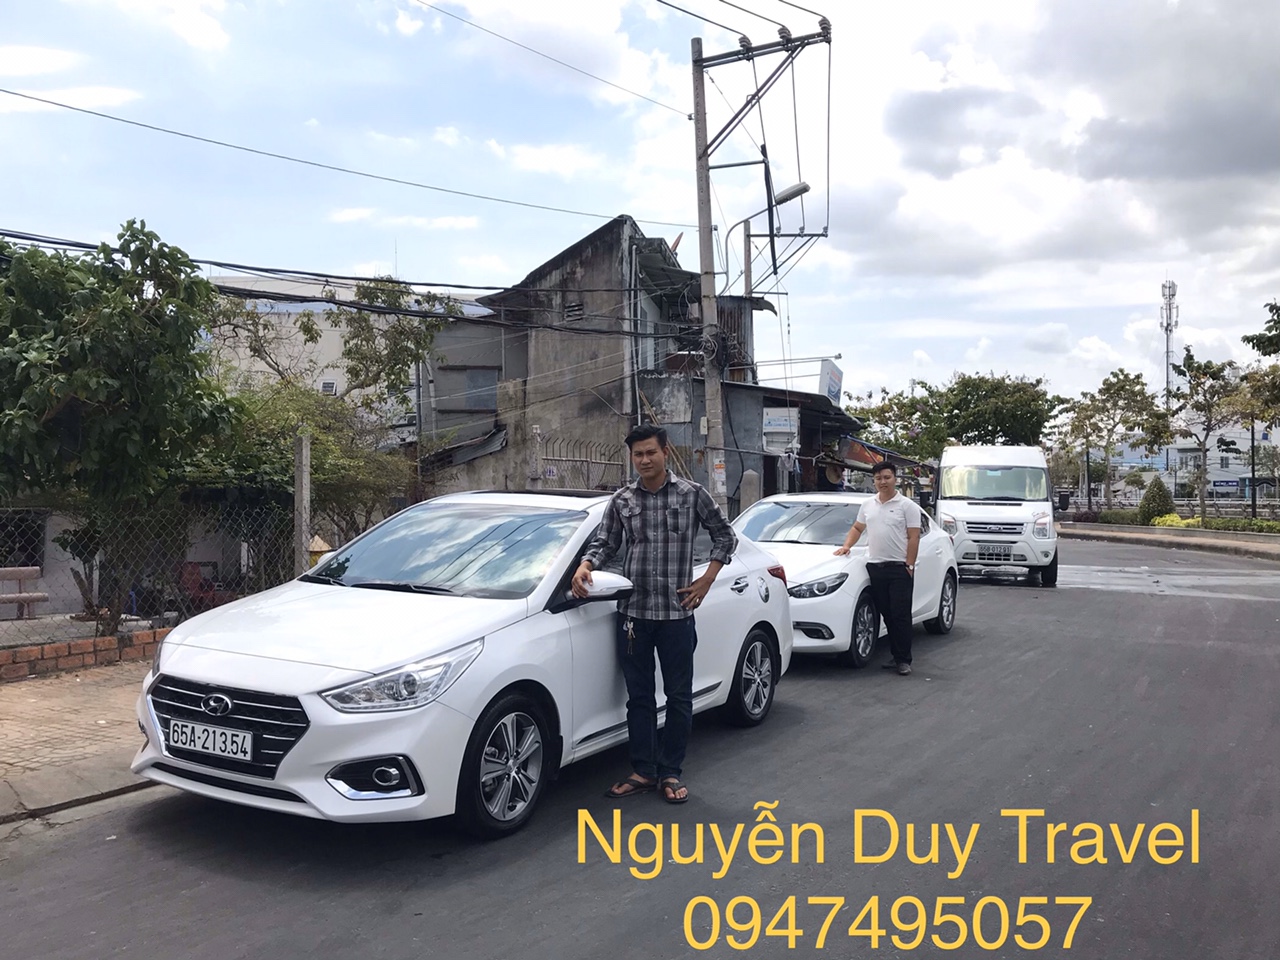 Cập nhật bảng giá xe đi các tỉnh miền Tây tại thuê xe Cần Thơ Nguyễn Duy Travel